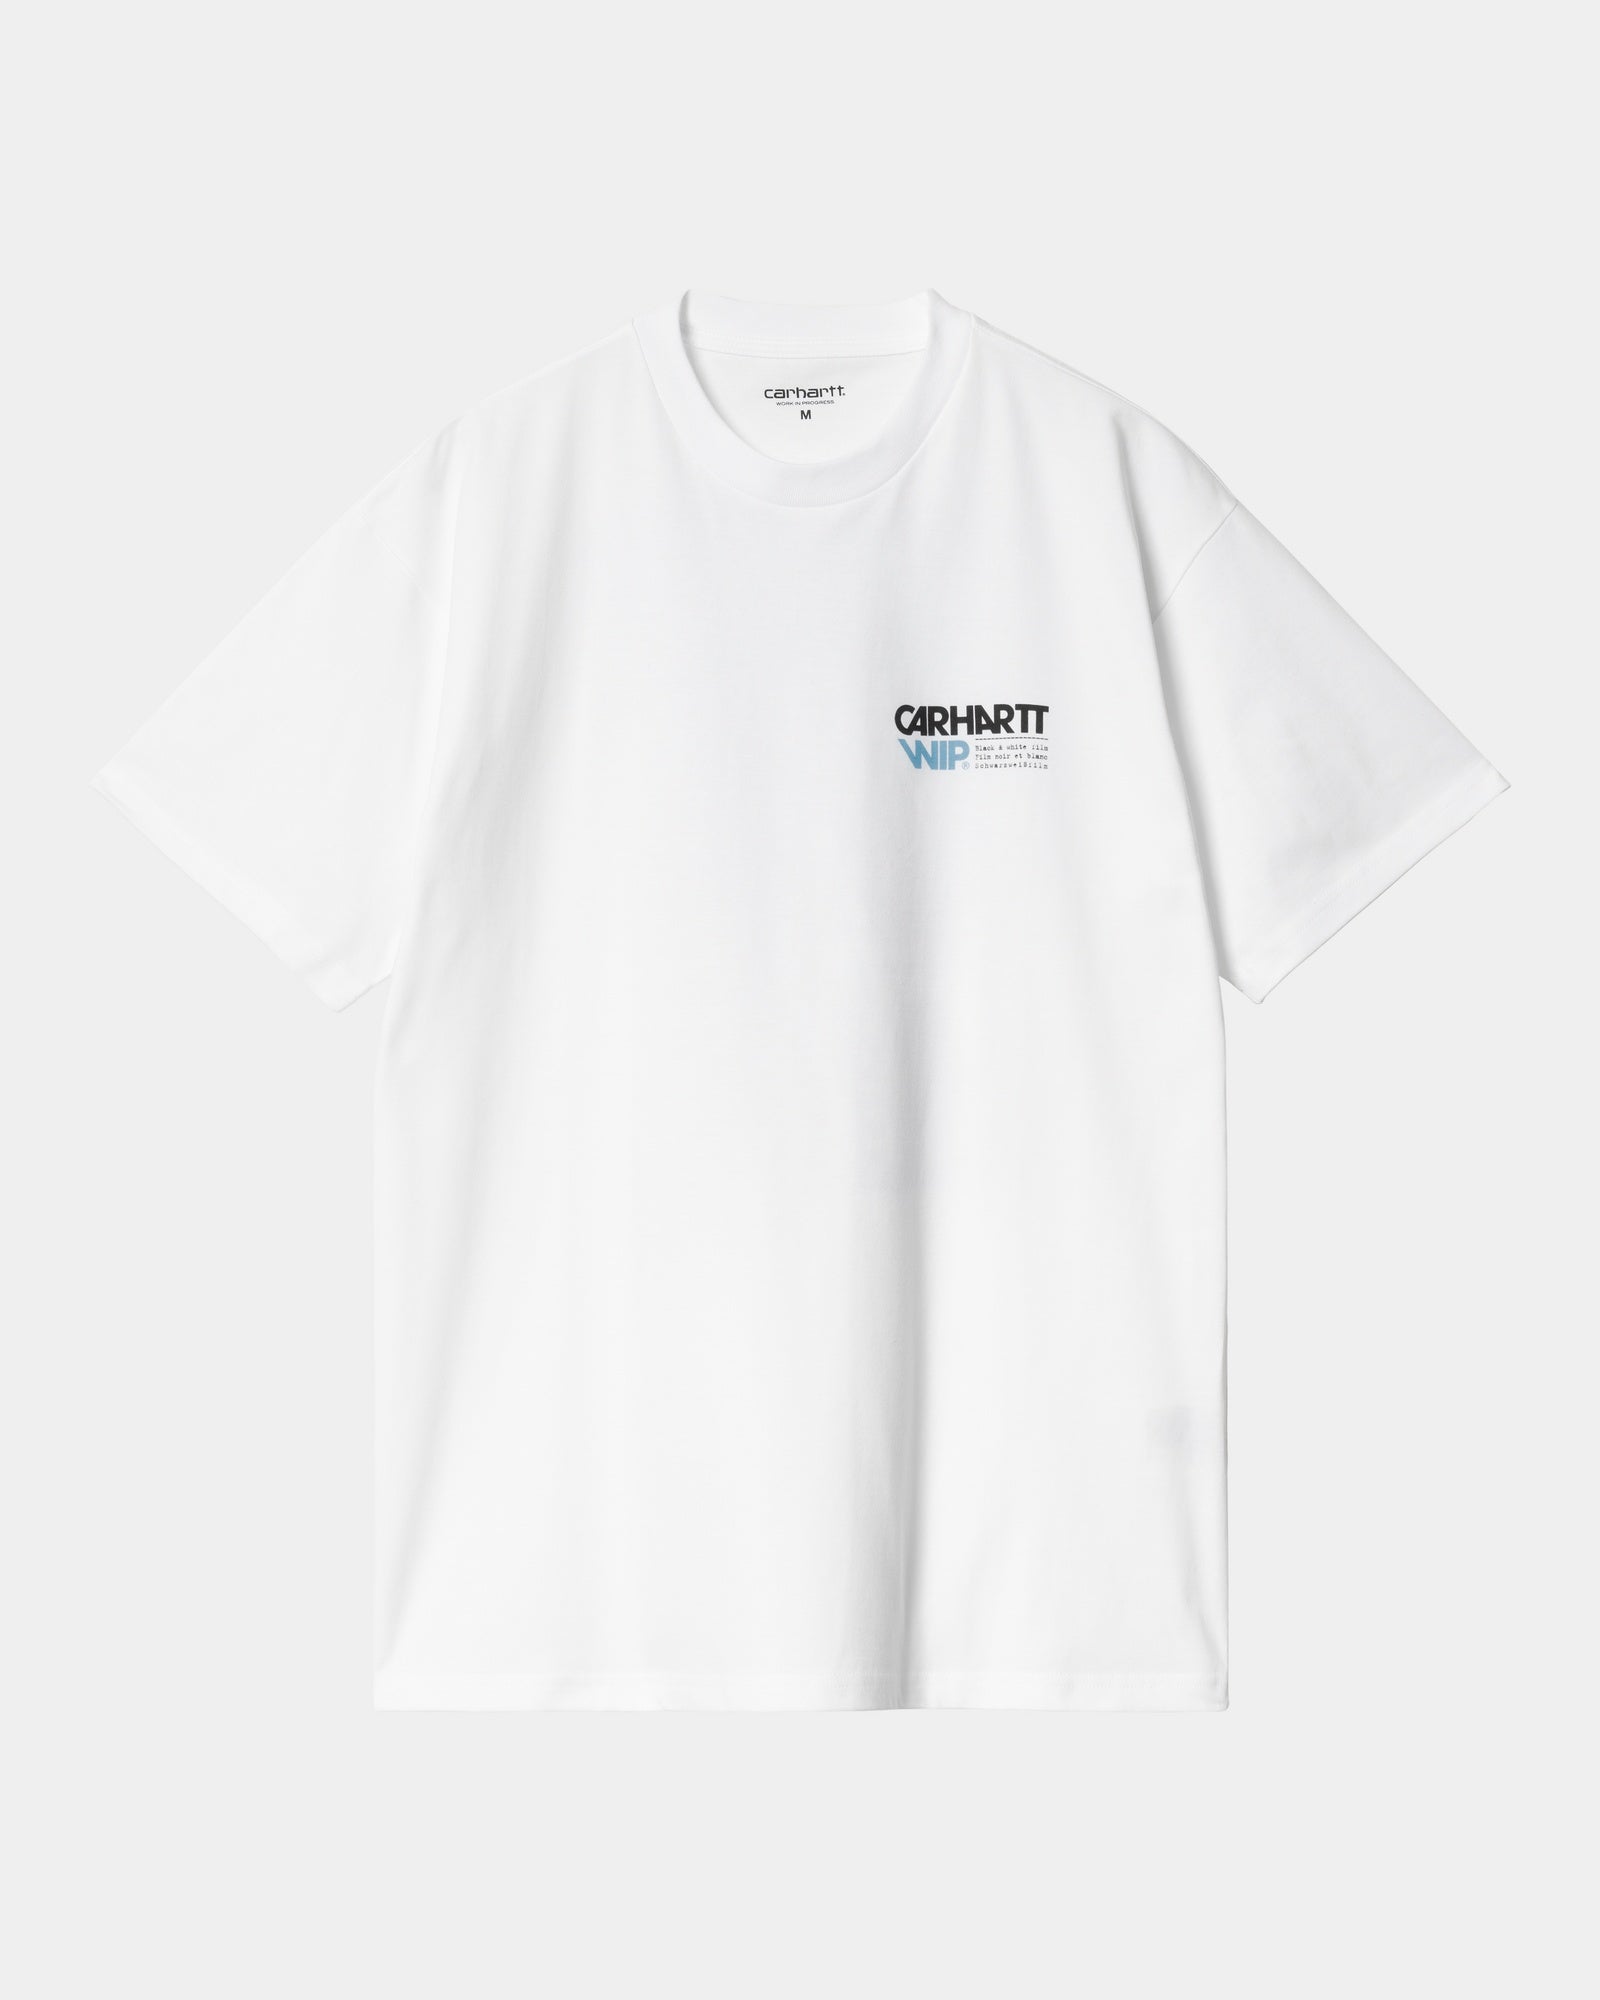 칼하트WIP Carhartt Contact Sheet T-Shirt,White